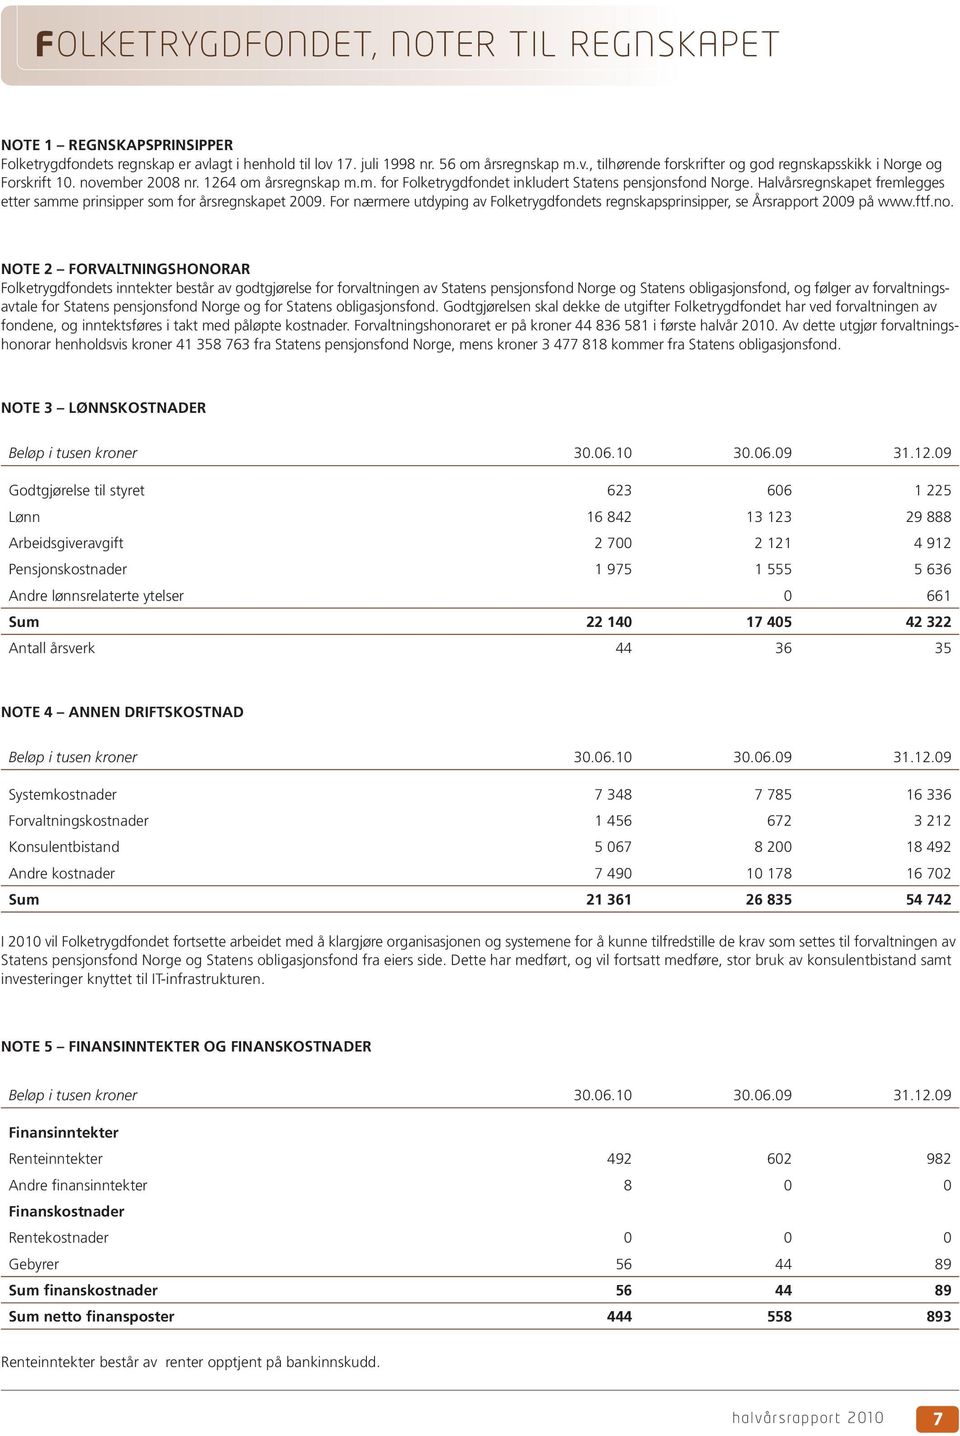 For nærmere utdyping av Folketrygdfondets regnskapsprinsipper, se Årsrapport 2009 på www.ftf.no.